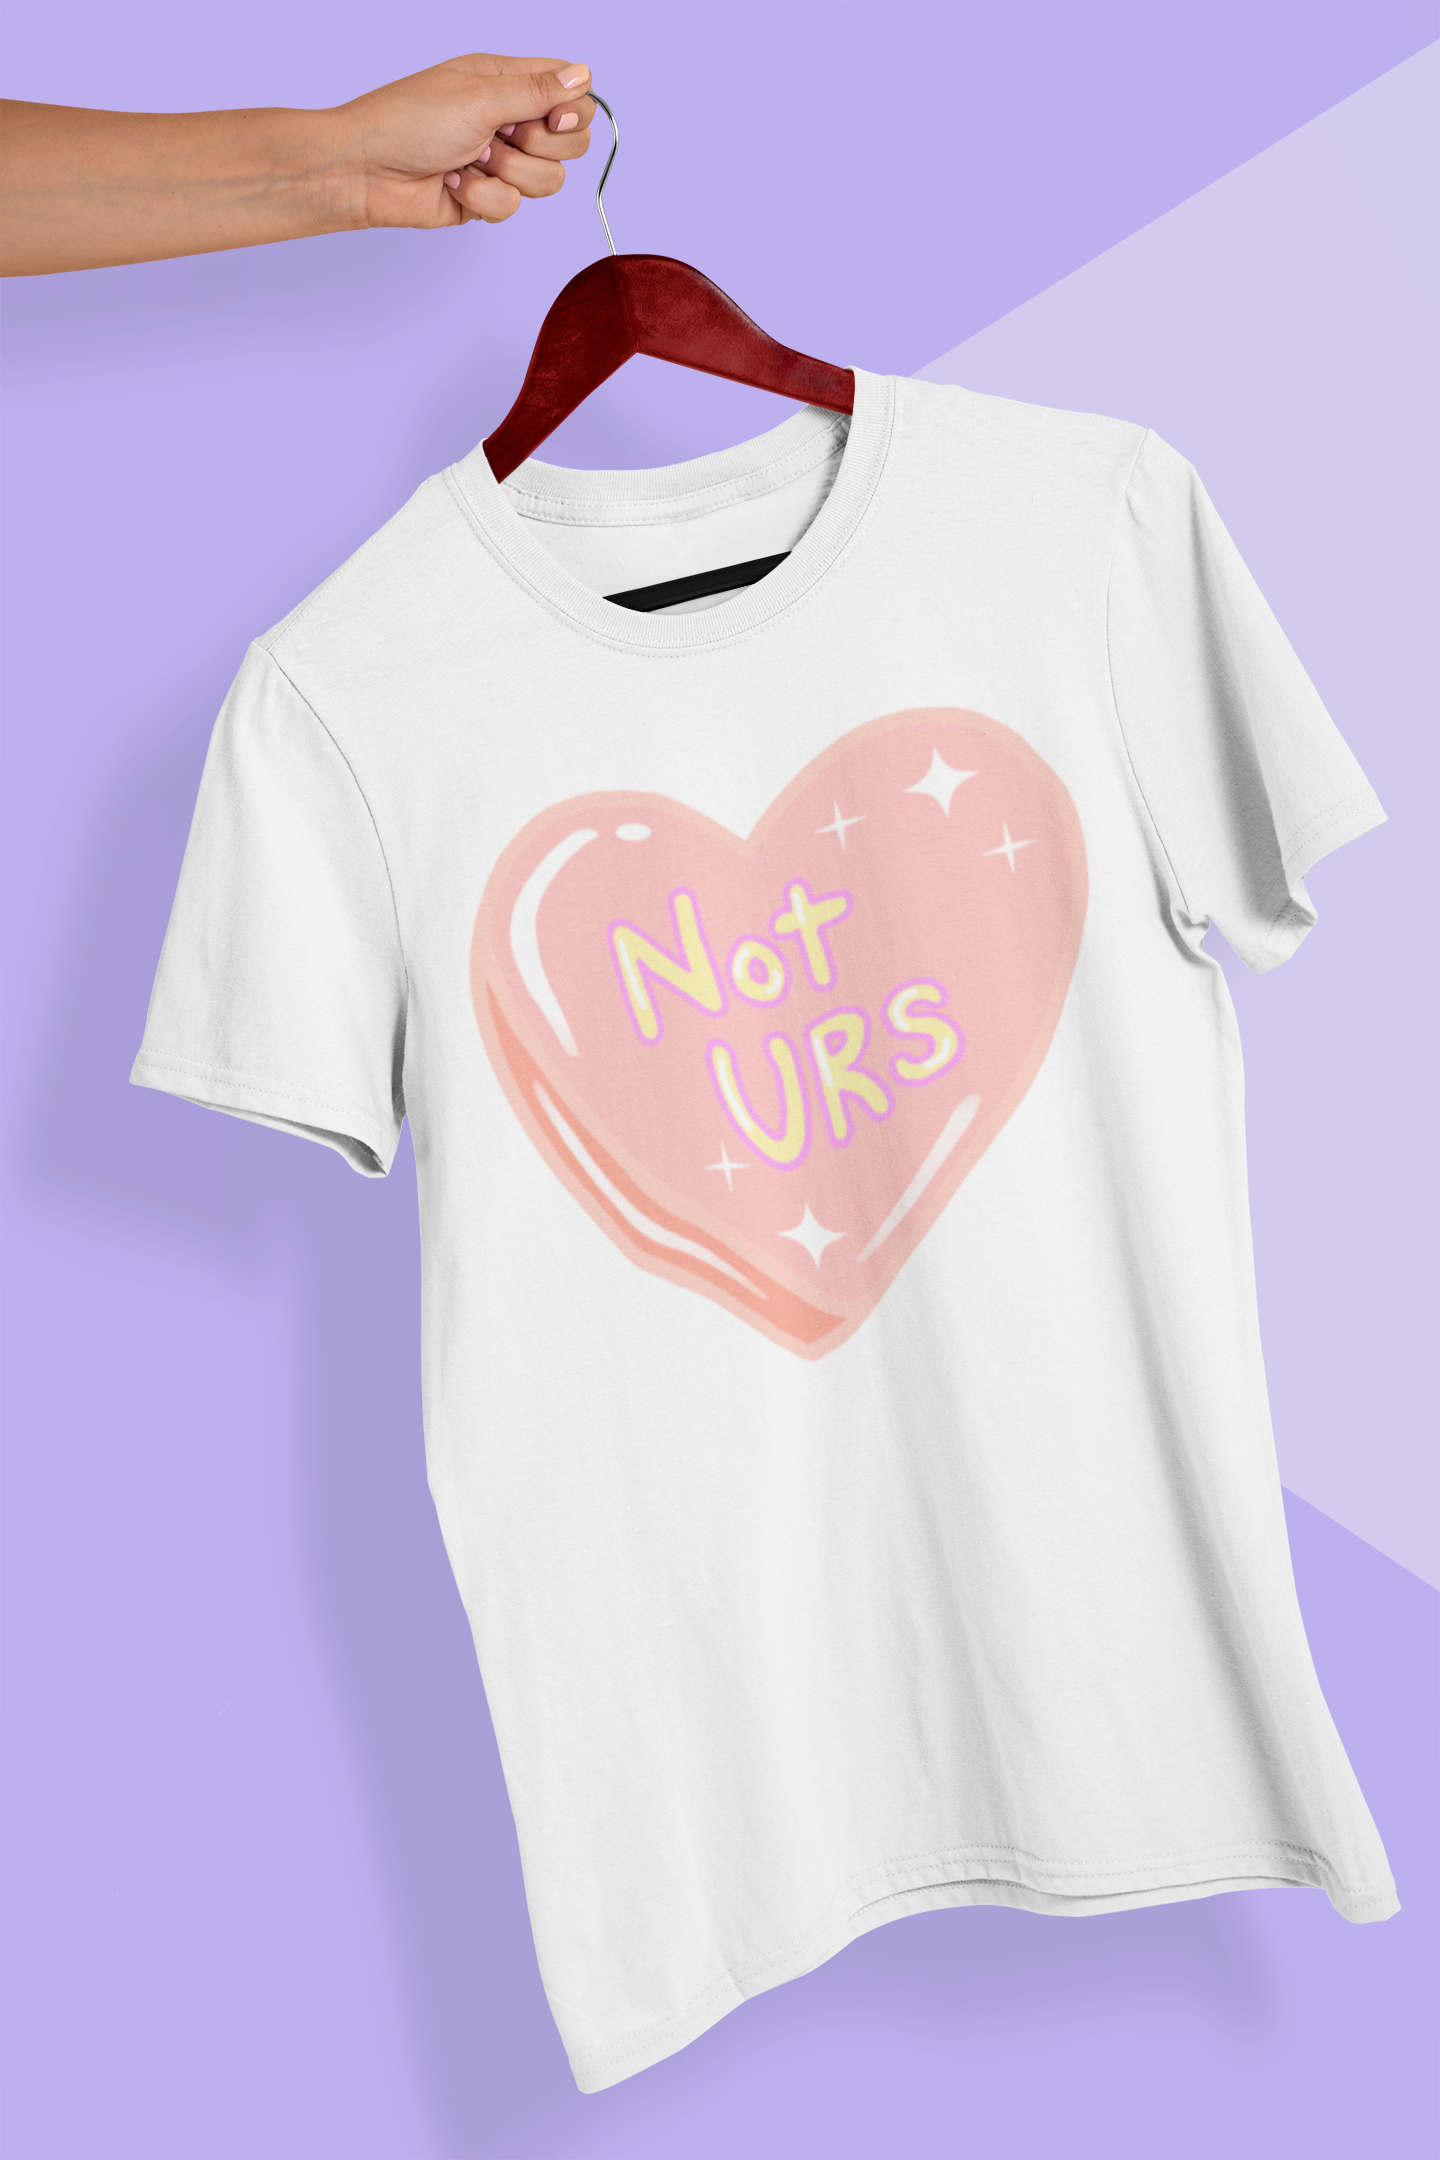 NOT URS! T-Shirt